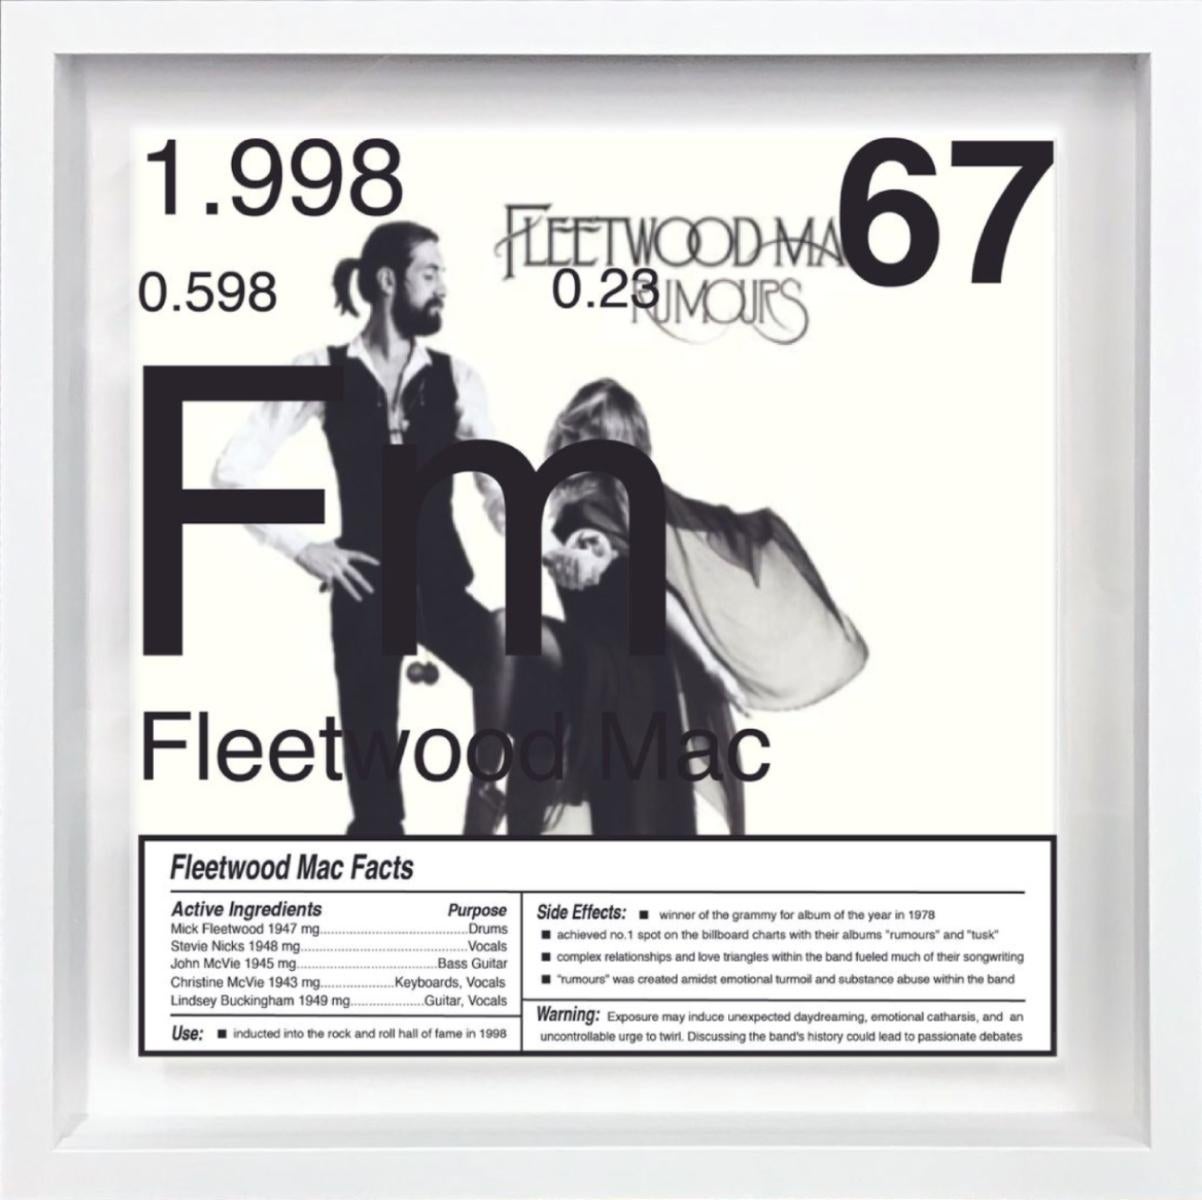 Fleetwood Mac_67 Edition limitée 1/9

Daniel Allen Cohen, artiste basé à Los Angeles et réputé pour son approche pluridisciplinaire, transforme la culture populaire en art conceptuel. Ses créations sont des reflets nuancés des valeurs, des désirs,